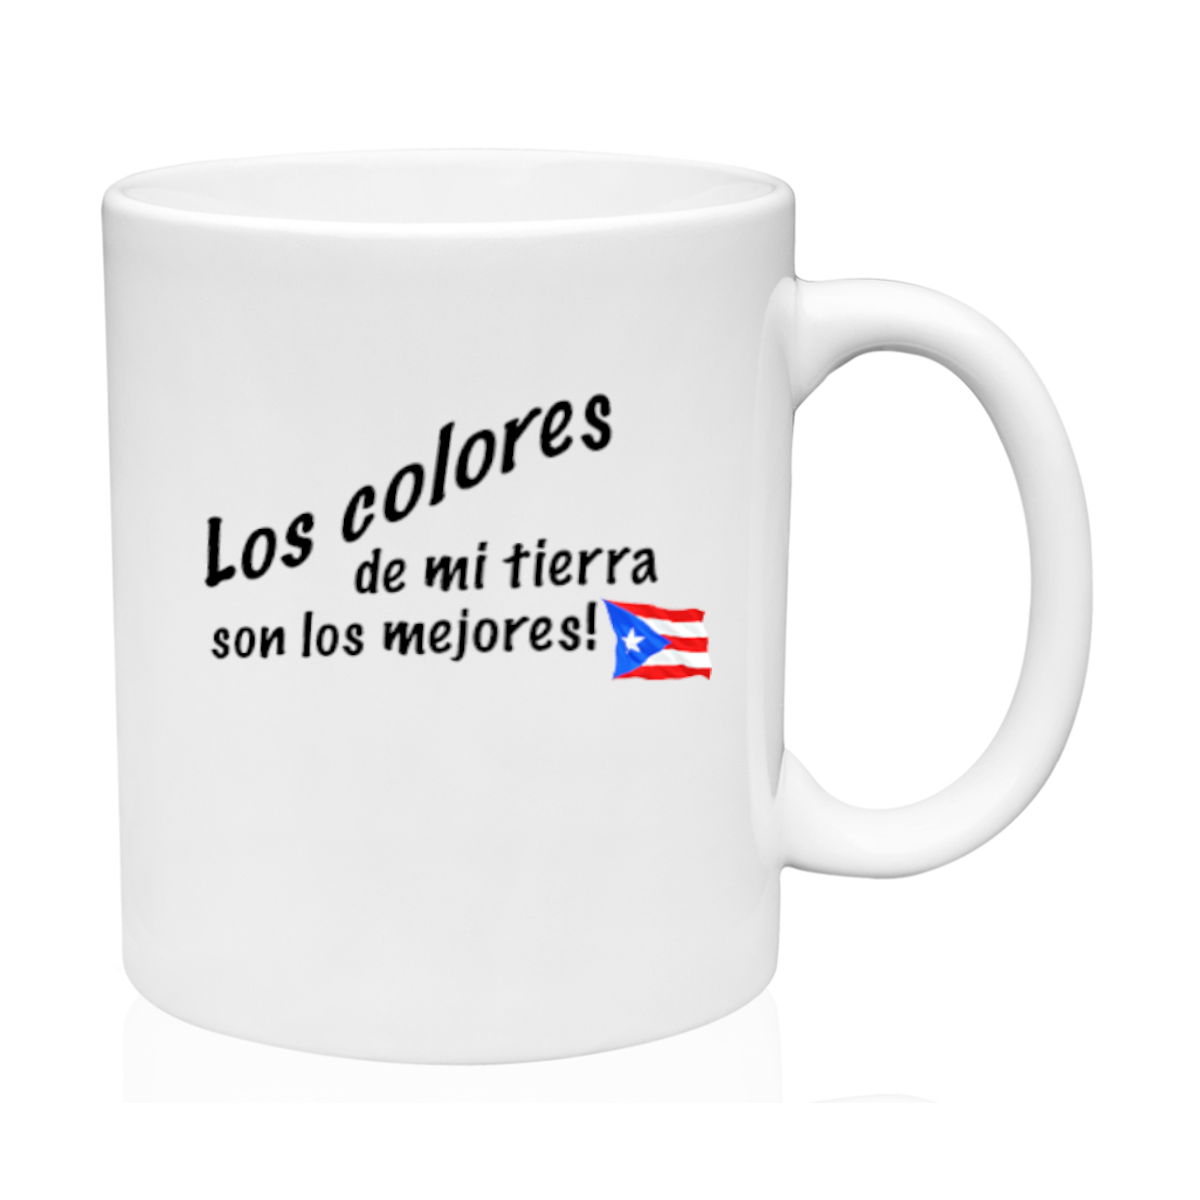 AGAD Puerto Rico (Colores PR Ceramic Mug)